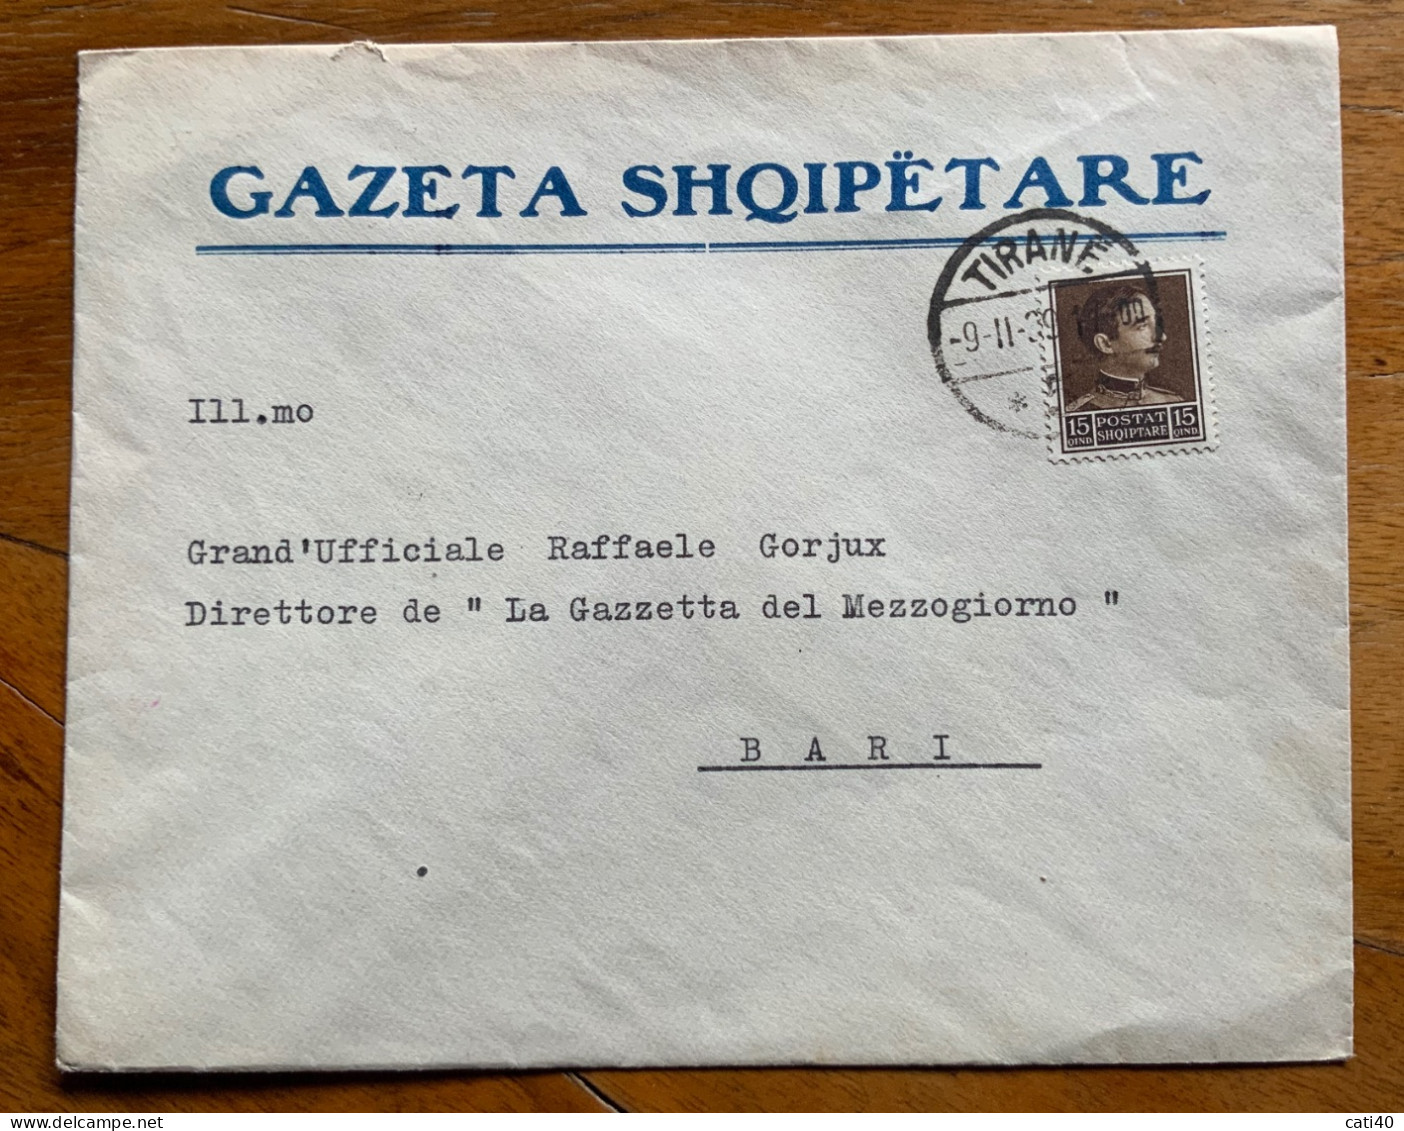 ALBANIA - GAZETA  SHQIPETARE - BUSTA  GIORNALE DA TIRANA 9/11/39 A RAFFAELE GORJUX DIRETTORE GAZZETTA DEL MEZZOGIORNO - Albania